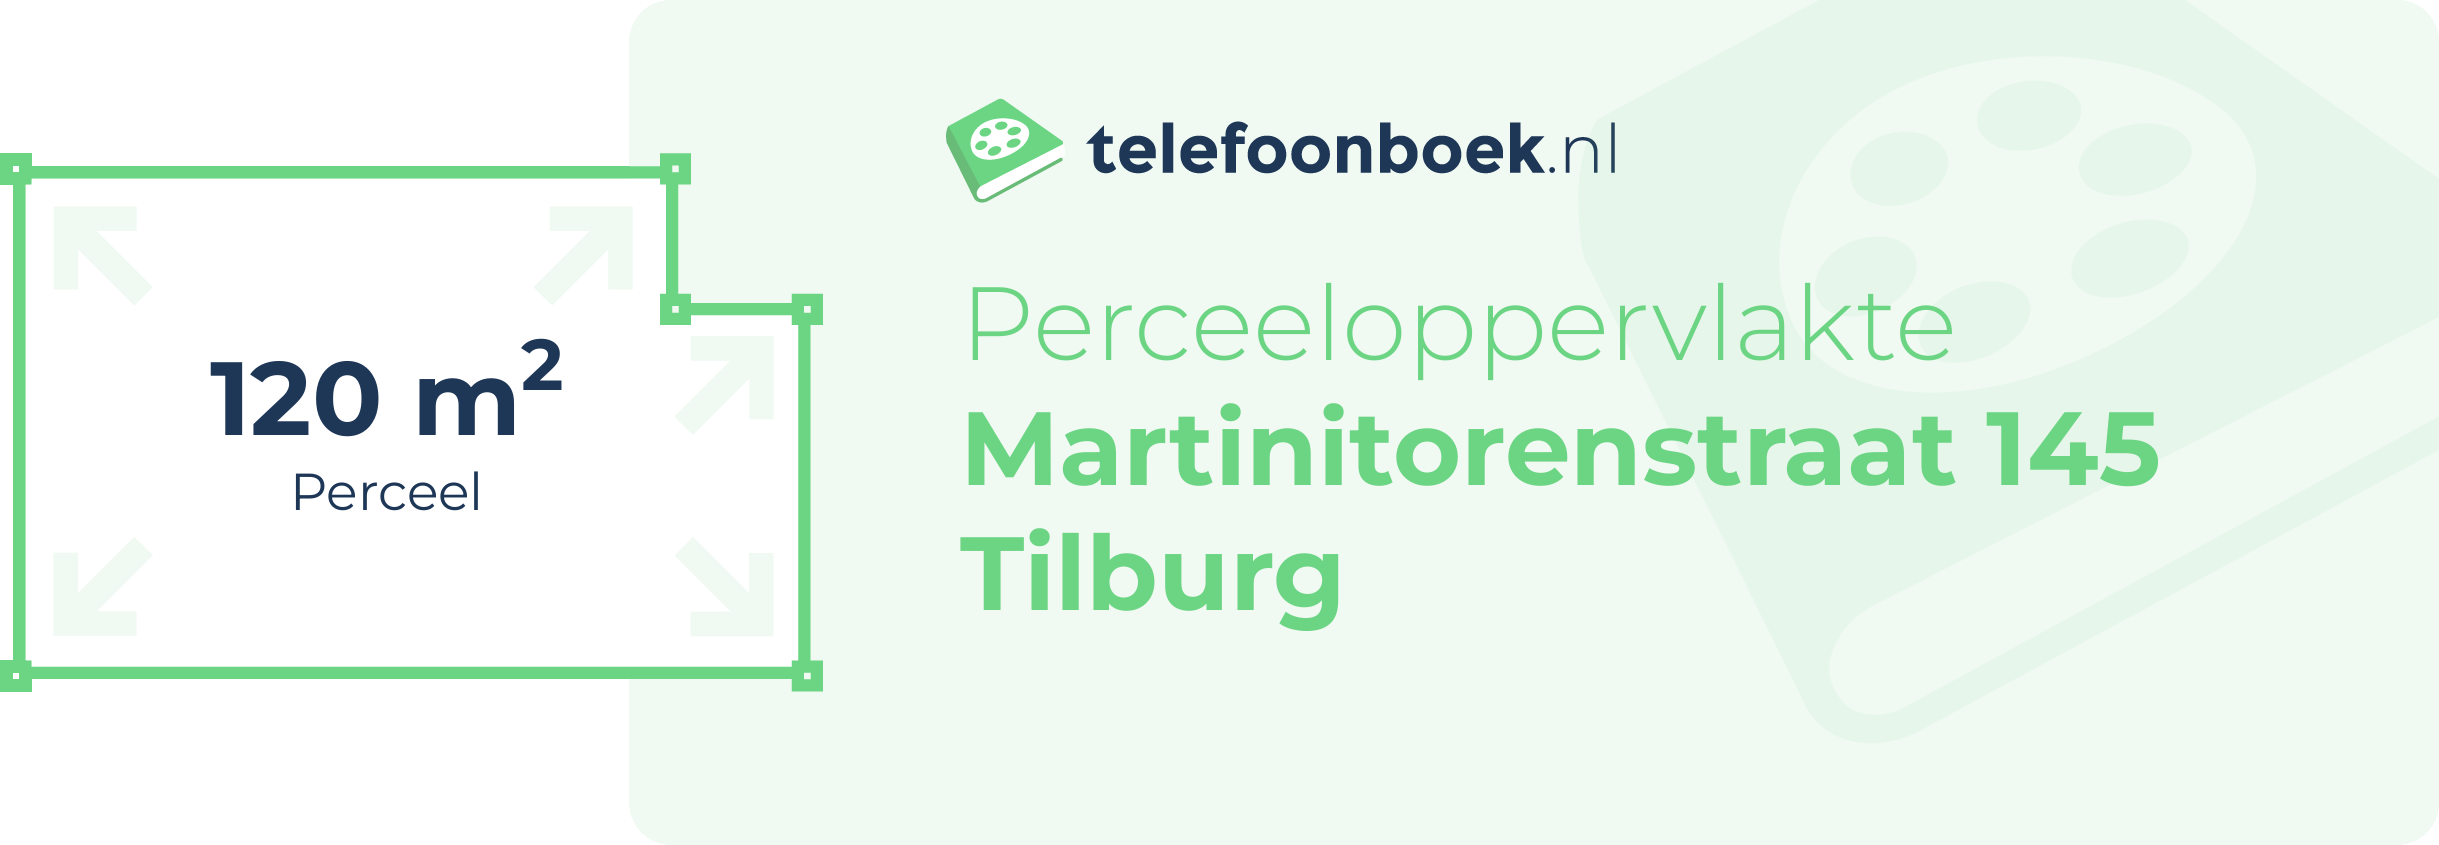 Perceeloppervlakte Martinitorenstraat 145 Tilburg